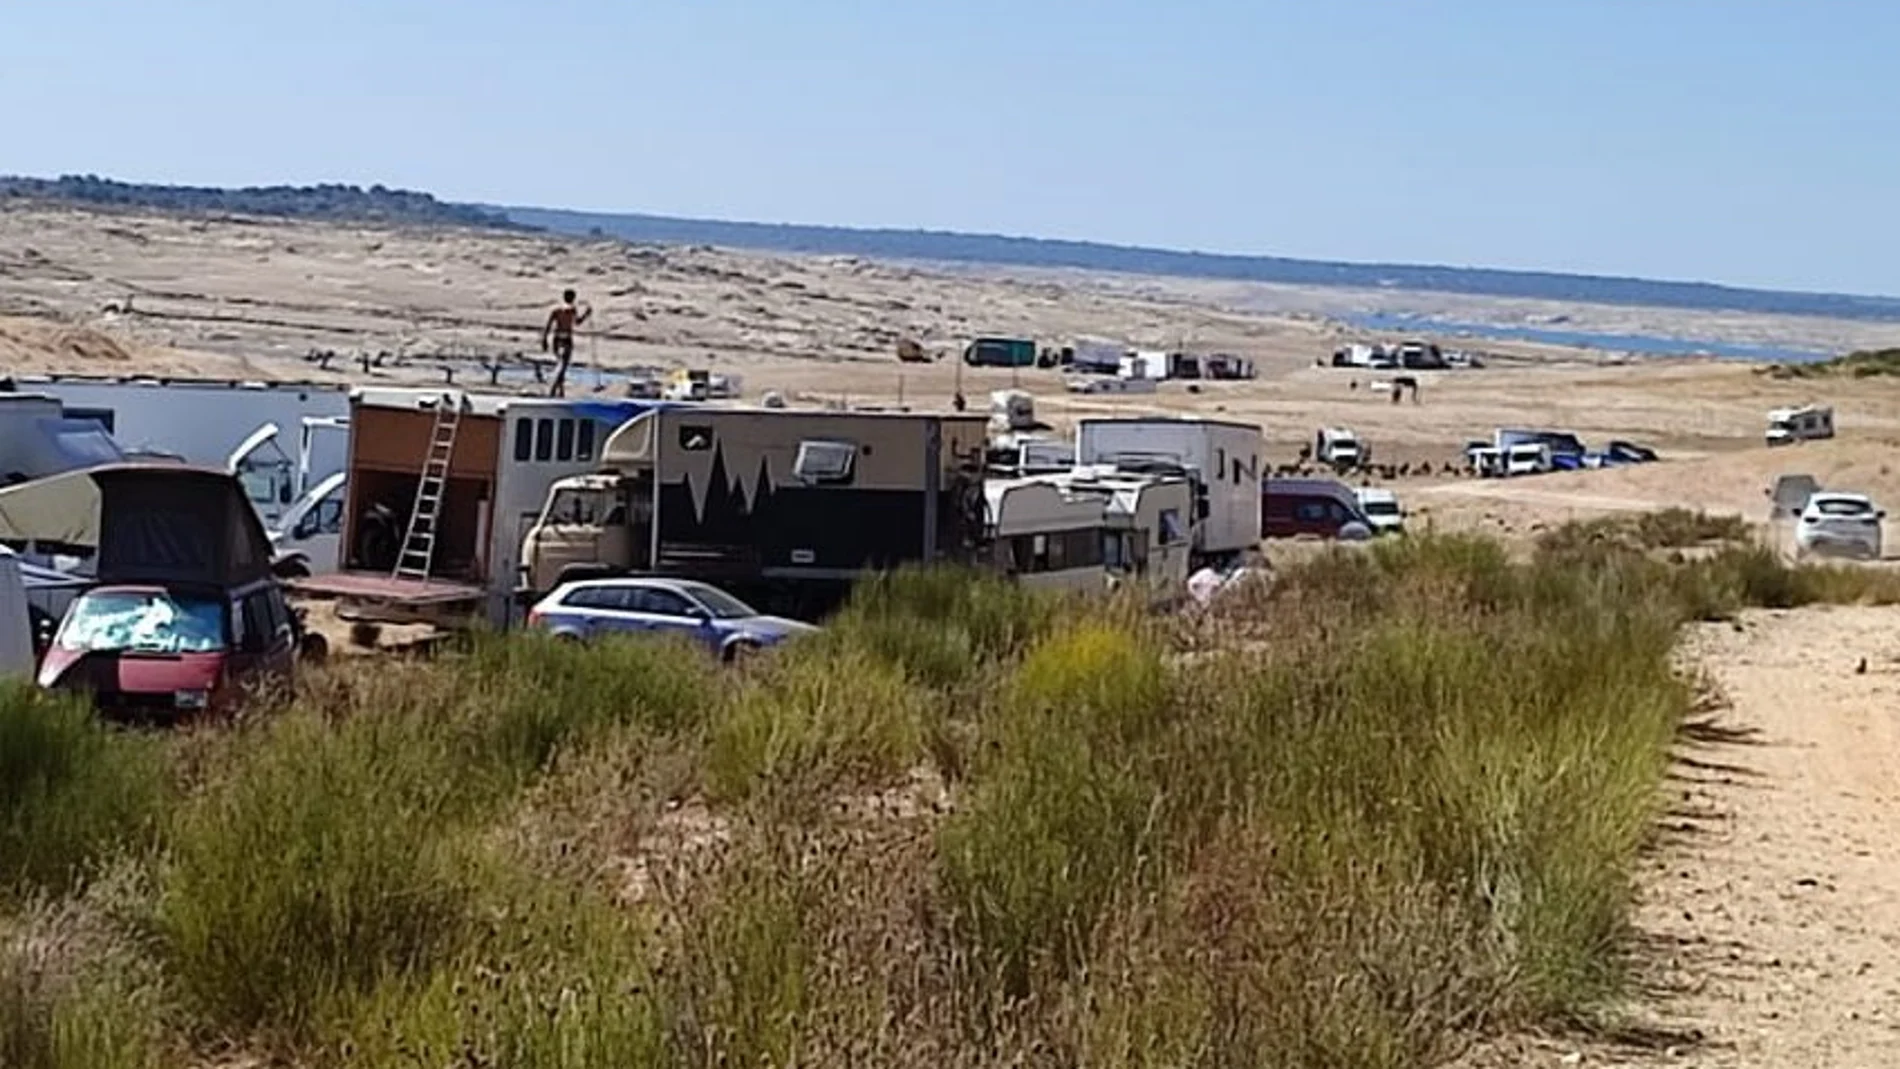 Caravanas y autocaravanas en el entorno del embalse de La Almendra, donde se está celebrando una fiesta rave ilegal